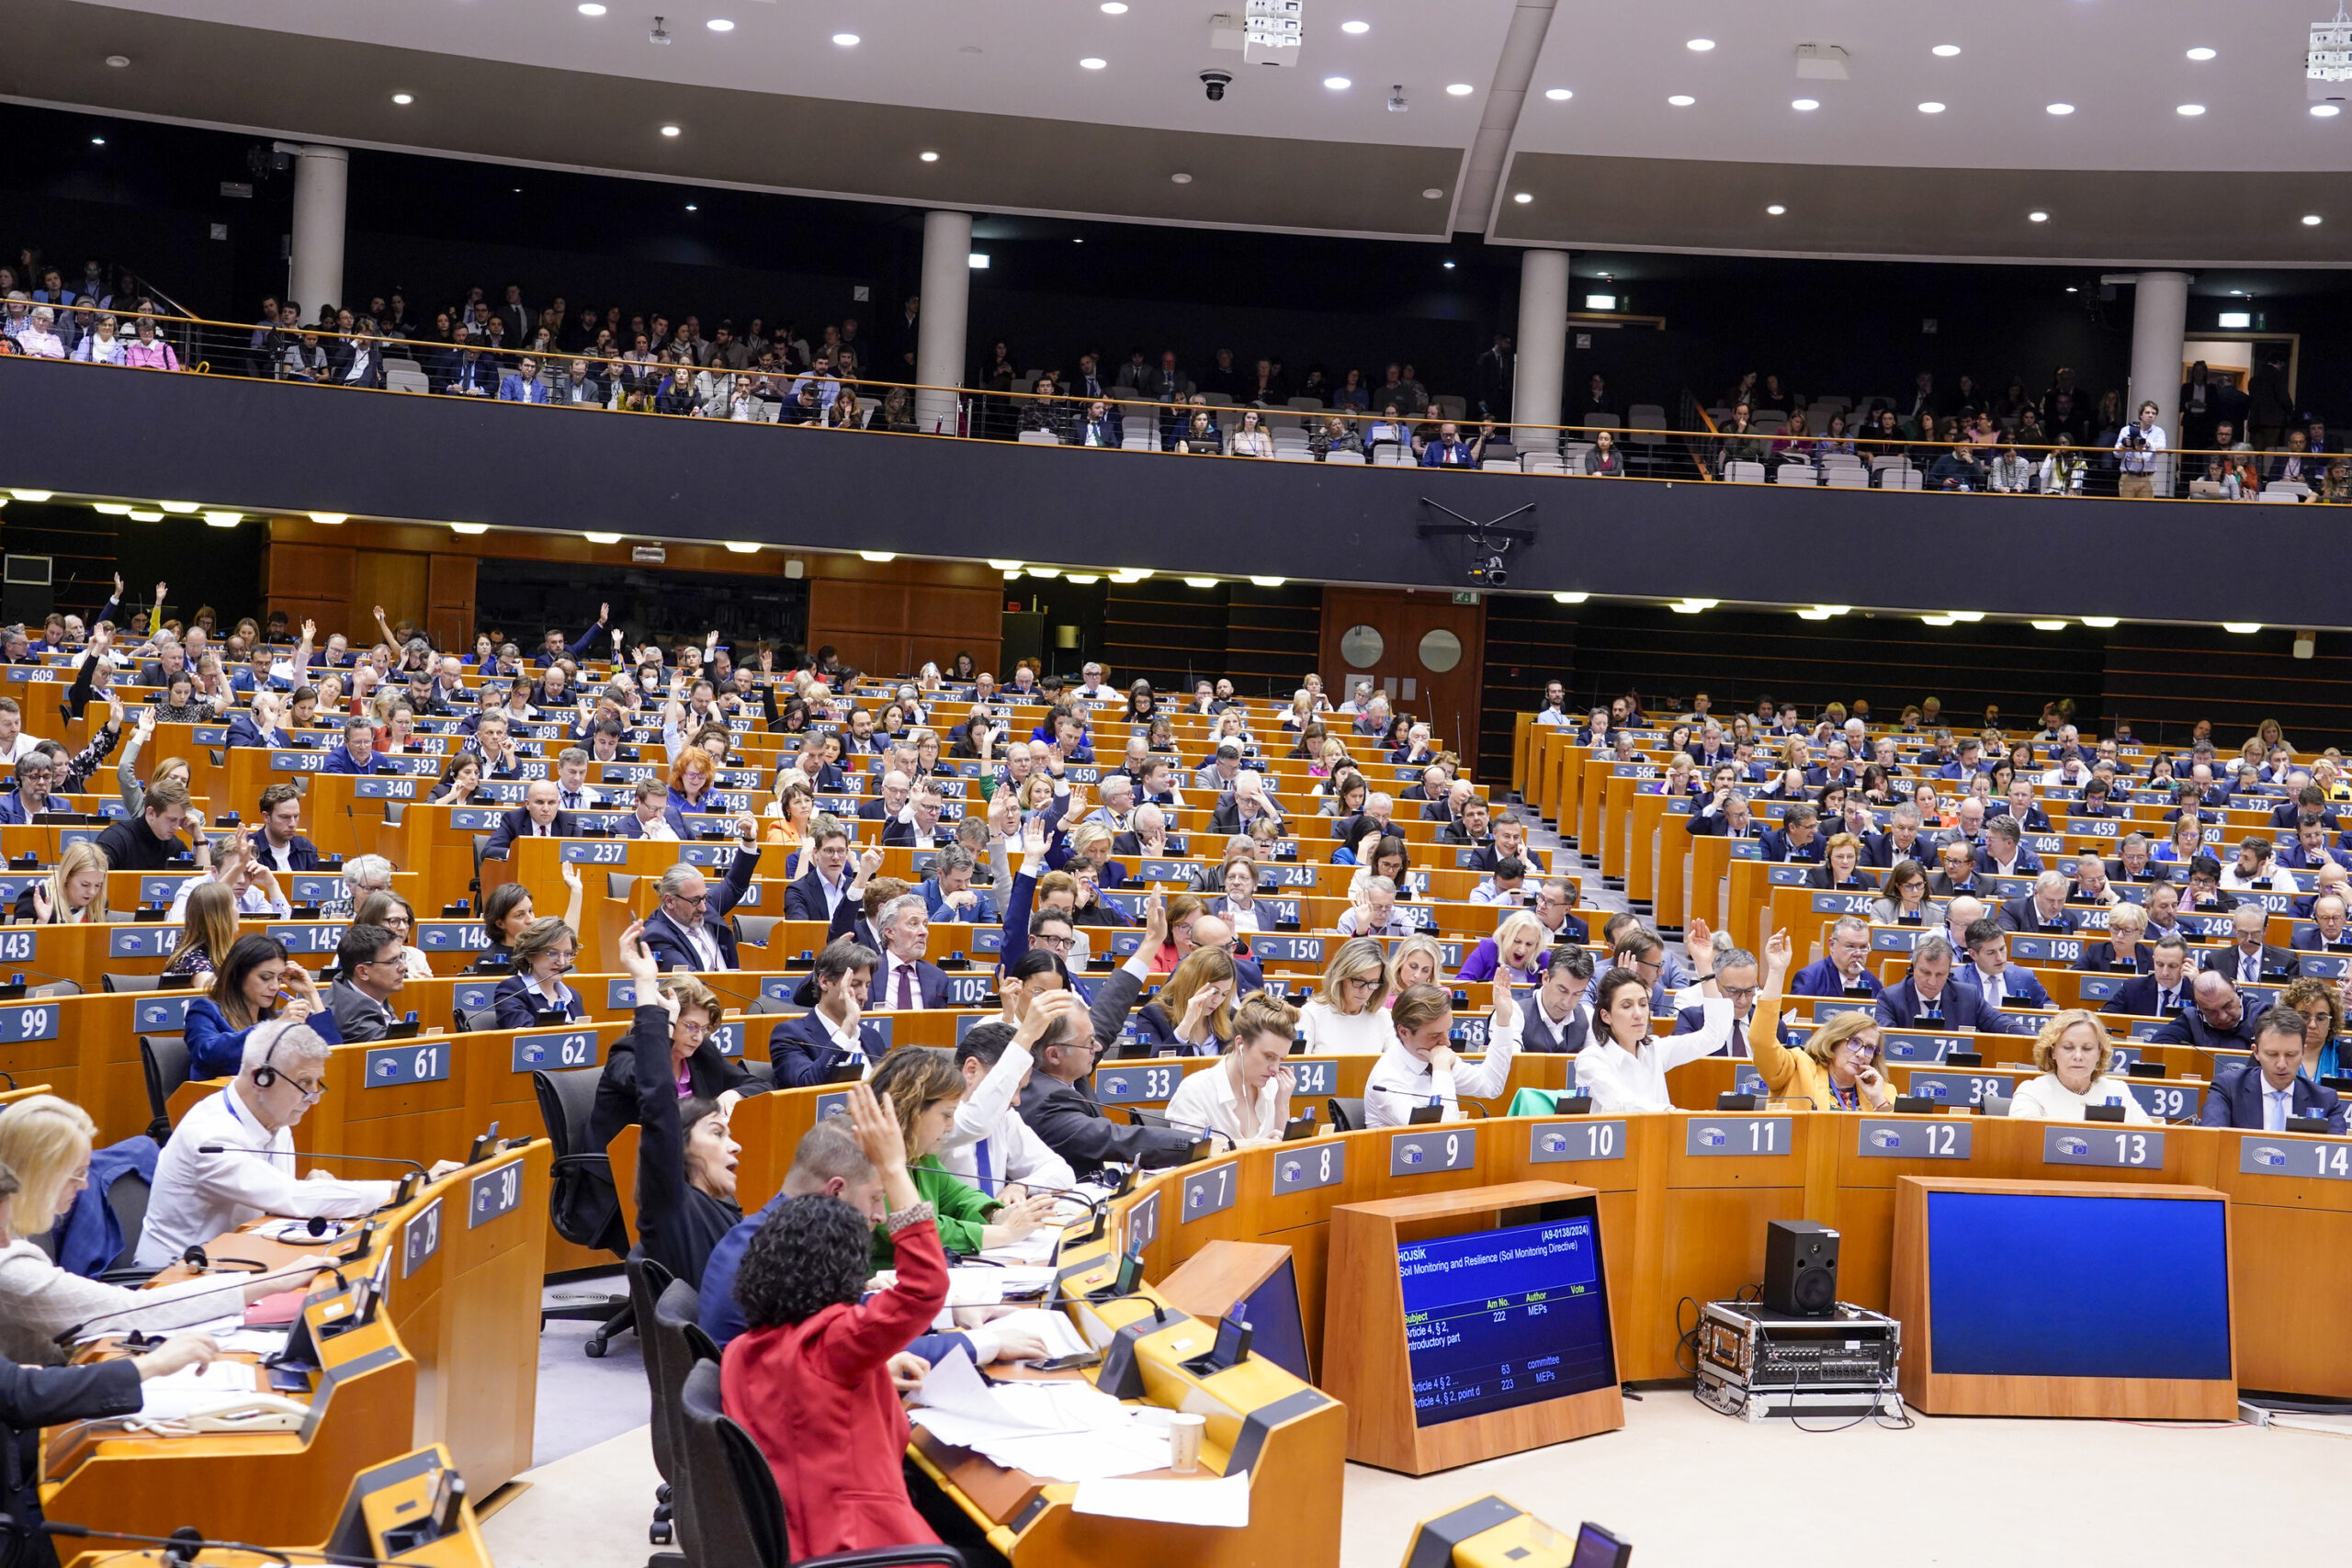 Votação no Parlamento Europeu durante uma sessão plenária